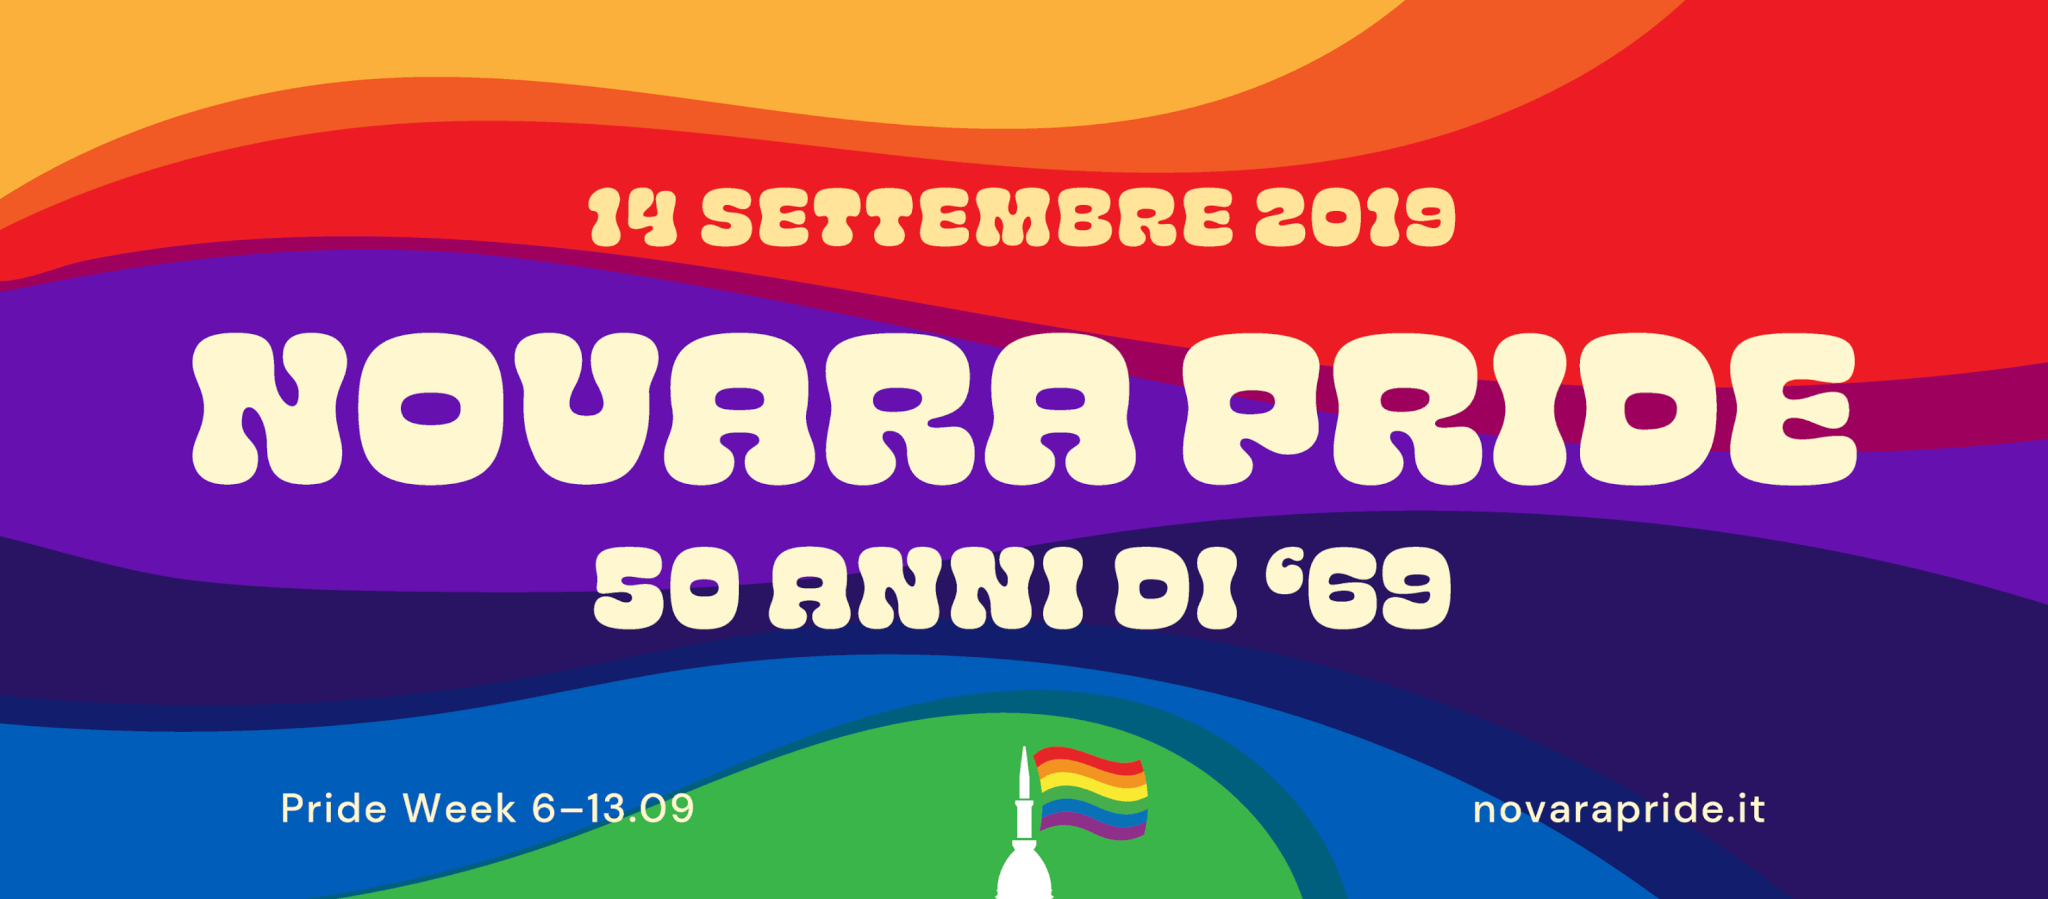 Onda Pride, Novara e Sorrento ultime tappe di un 2019 da record - 68593646 2151735505119864 2996341894914506752 o - Gay.it